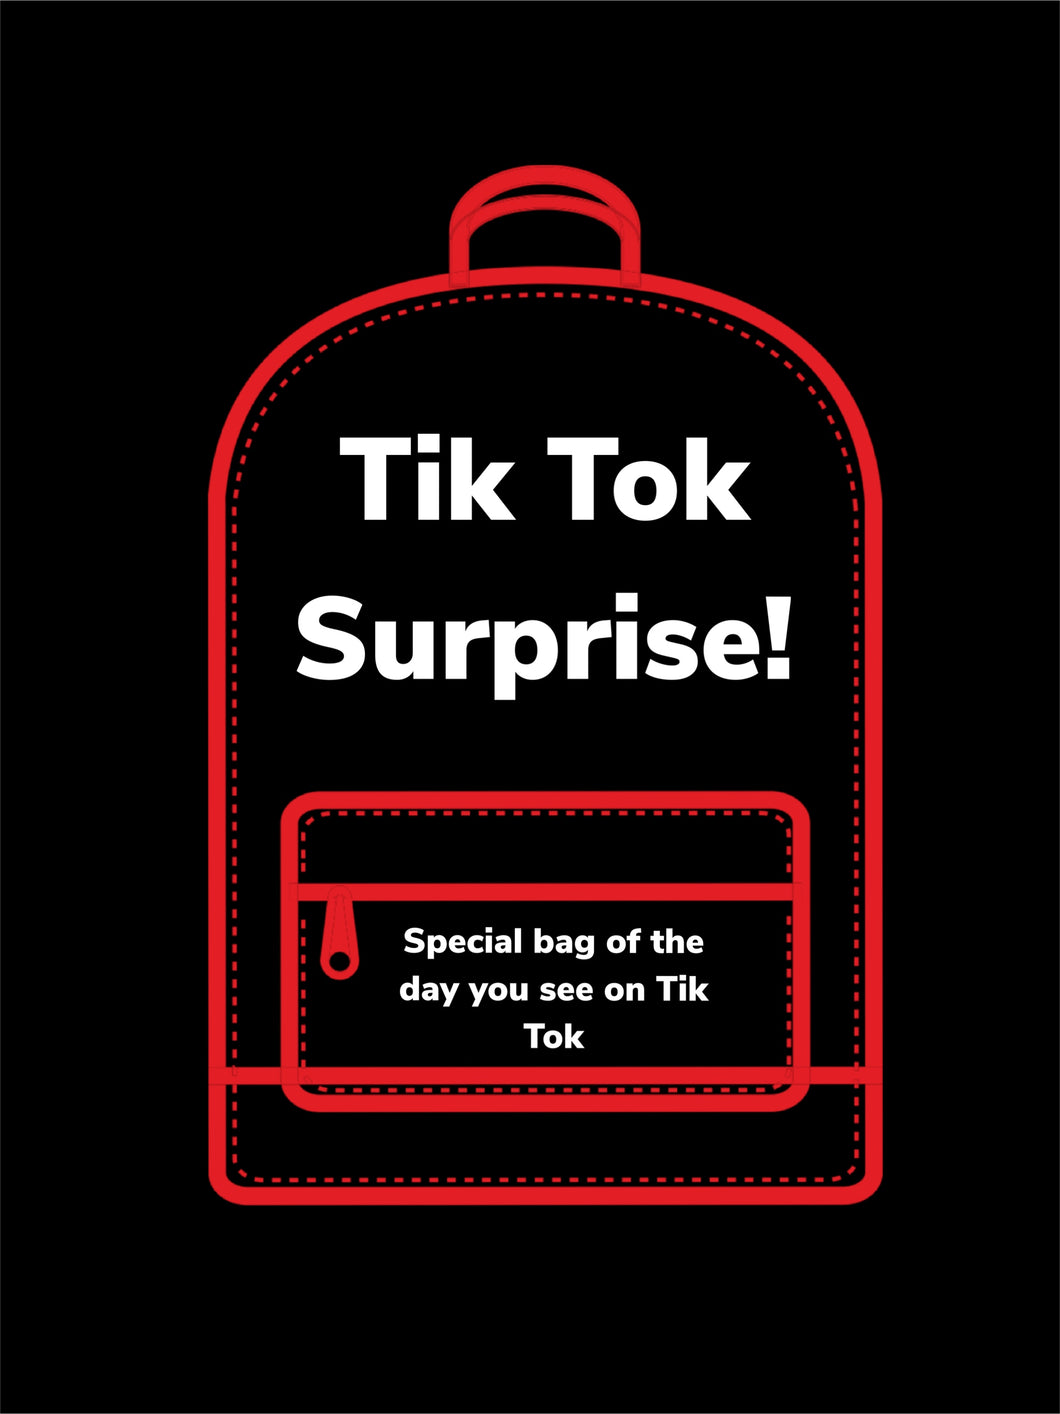 Tik Tok surprise